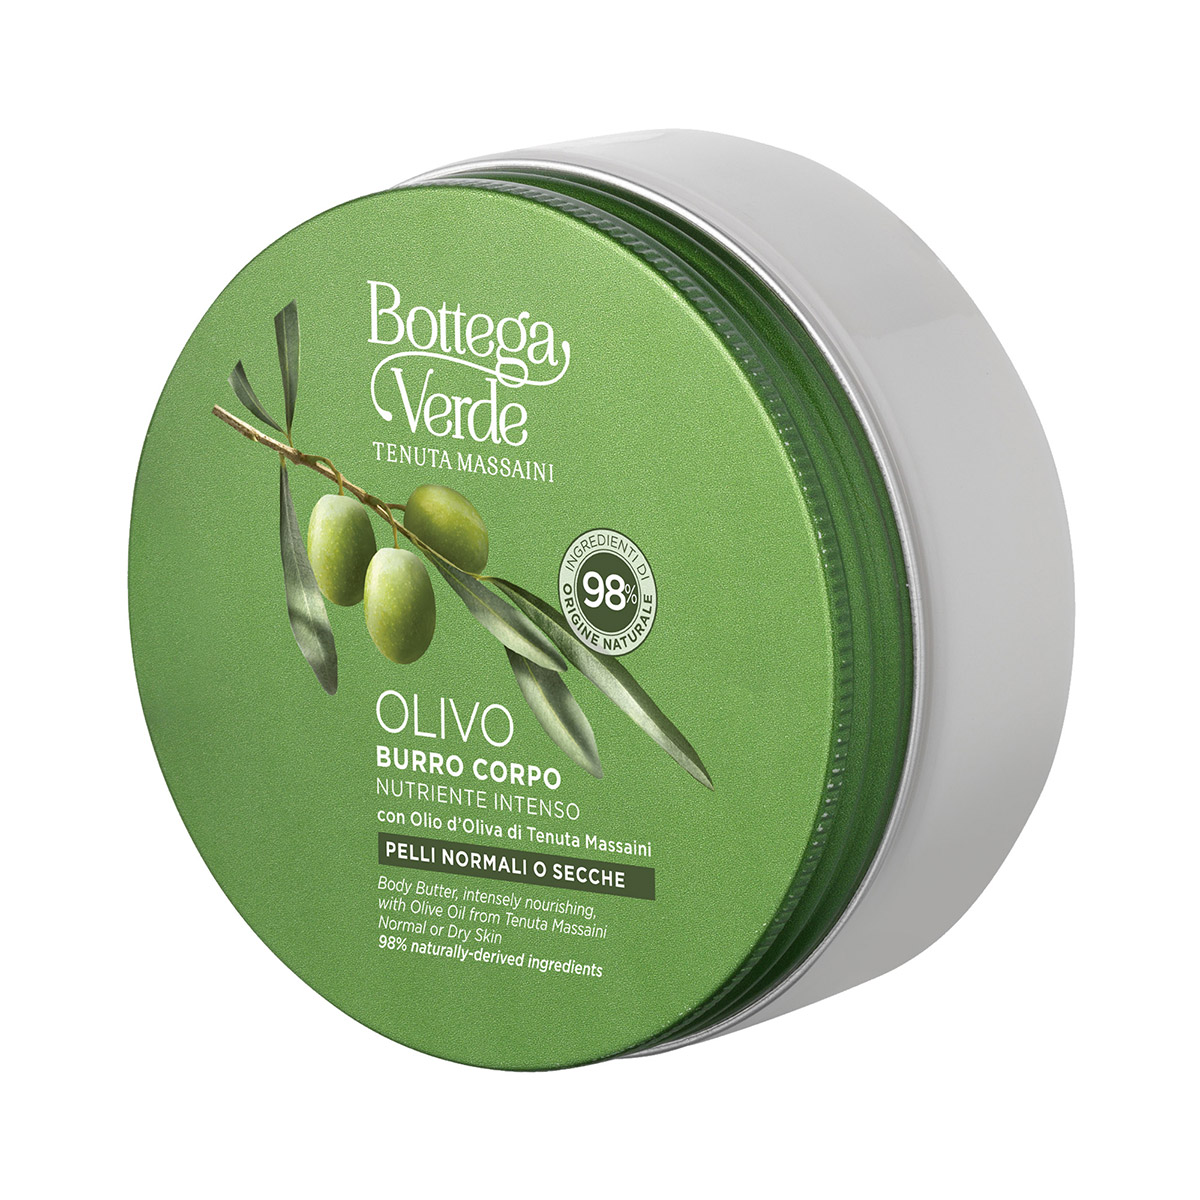 OLIVO - Burro corpo, nutriente intenso, con olio d'Oliva di Tenuta Massaini - pelli normali o secche